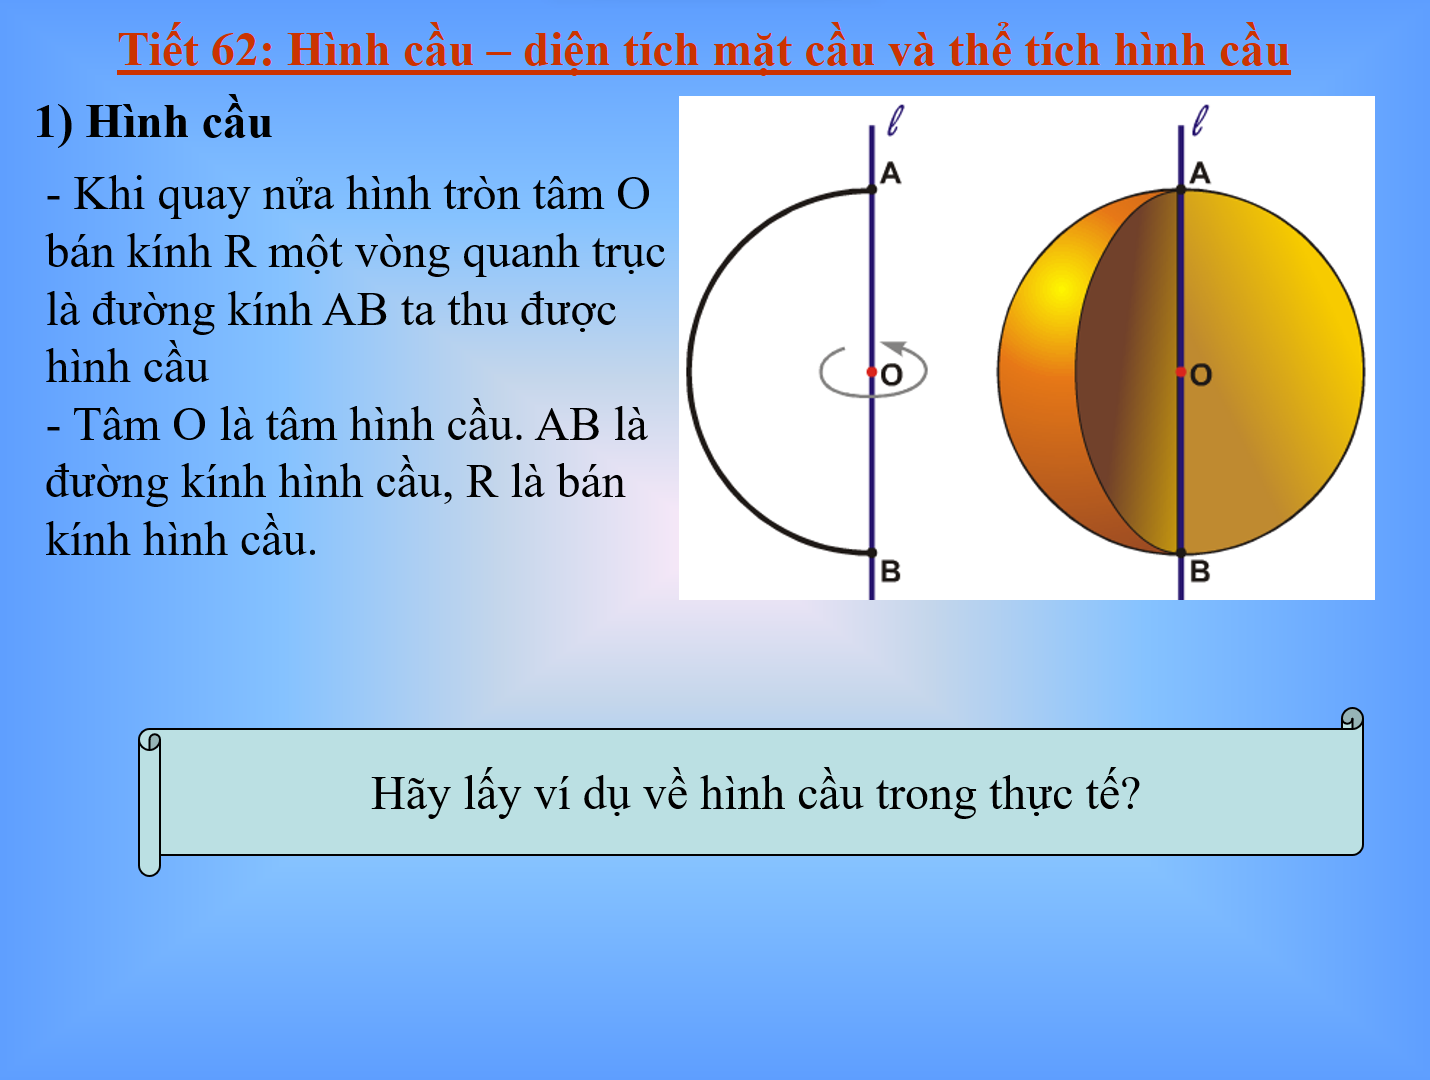 Bài 3: Hình cầu - Diện tích mặt cầu và thể tích hình cầu